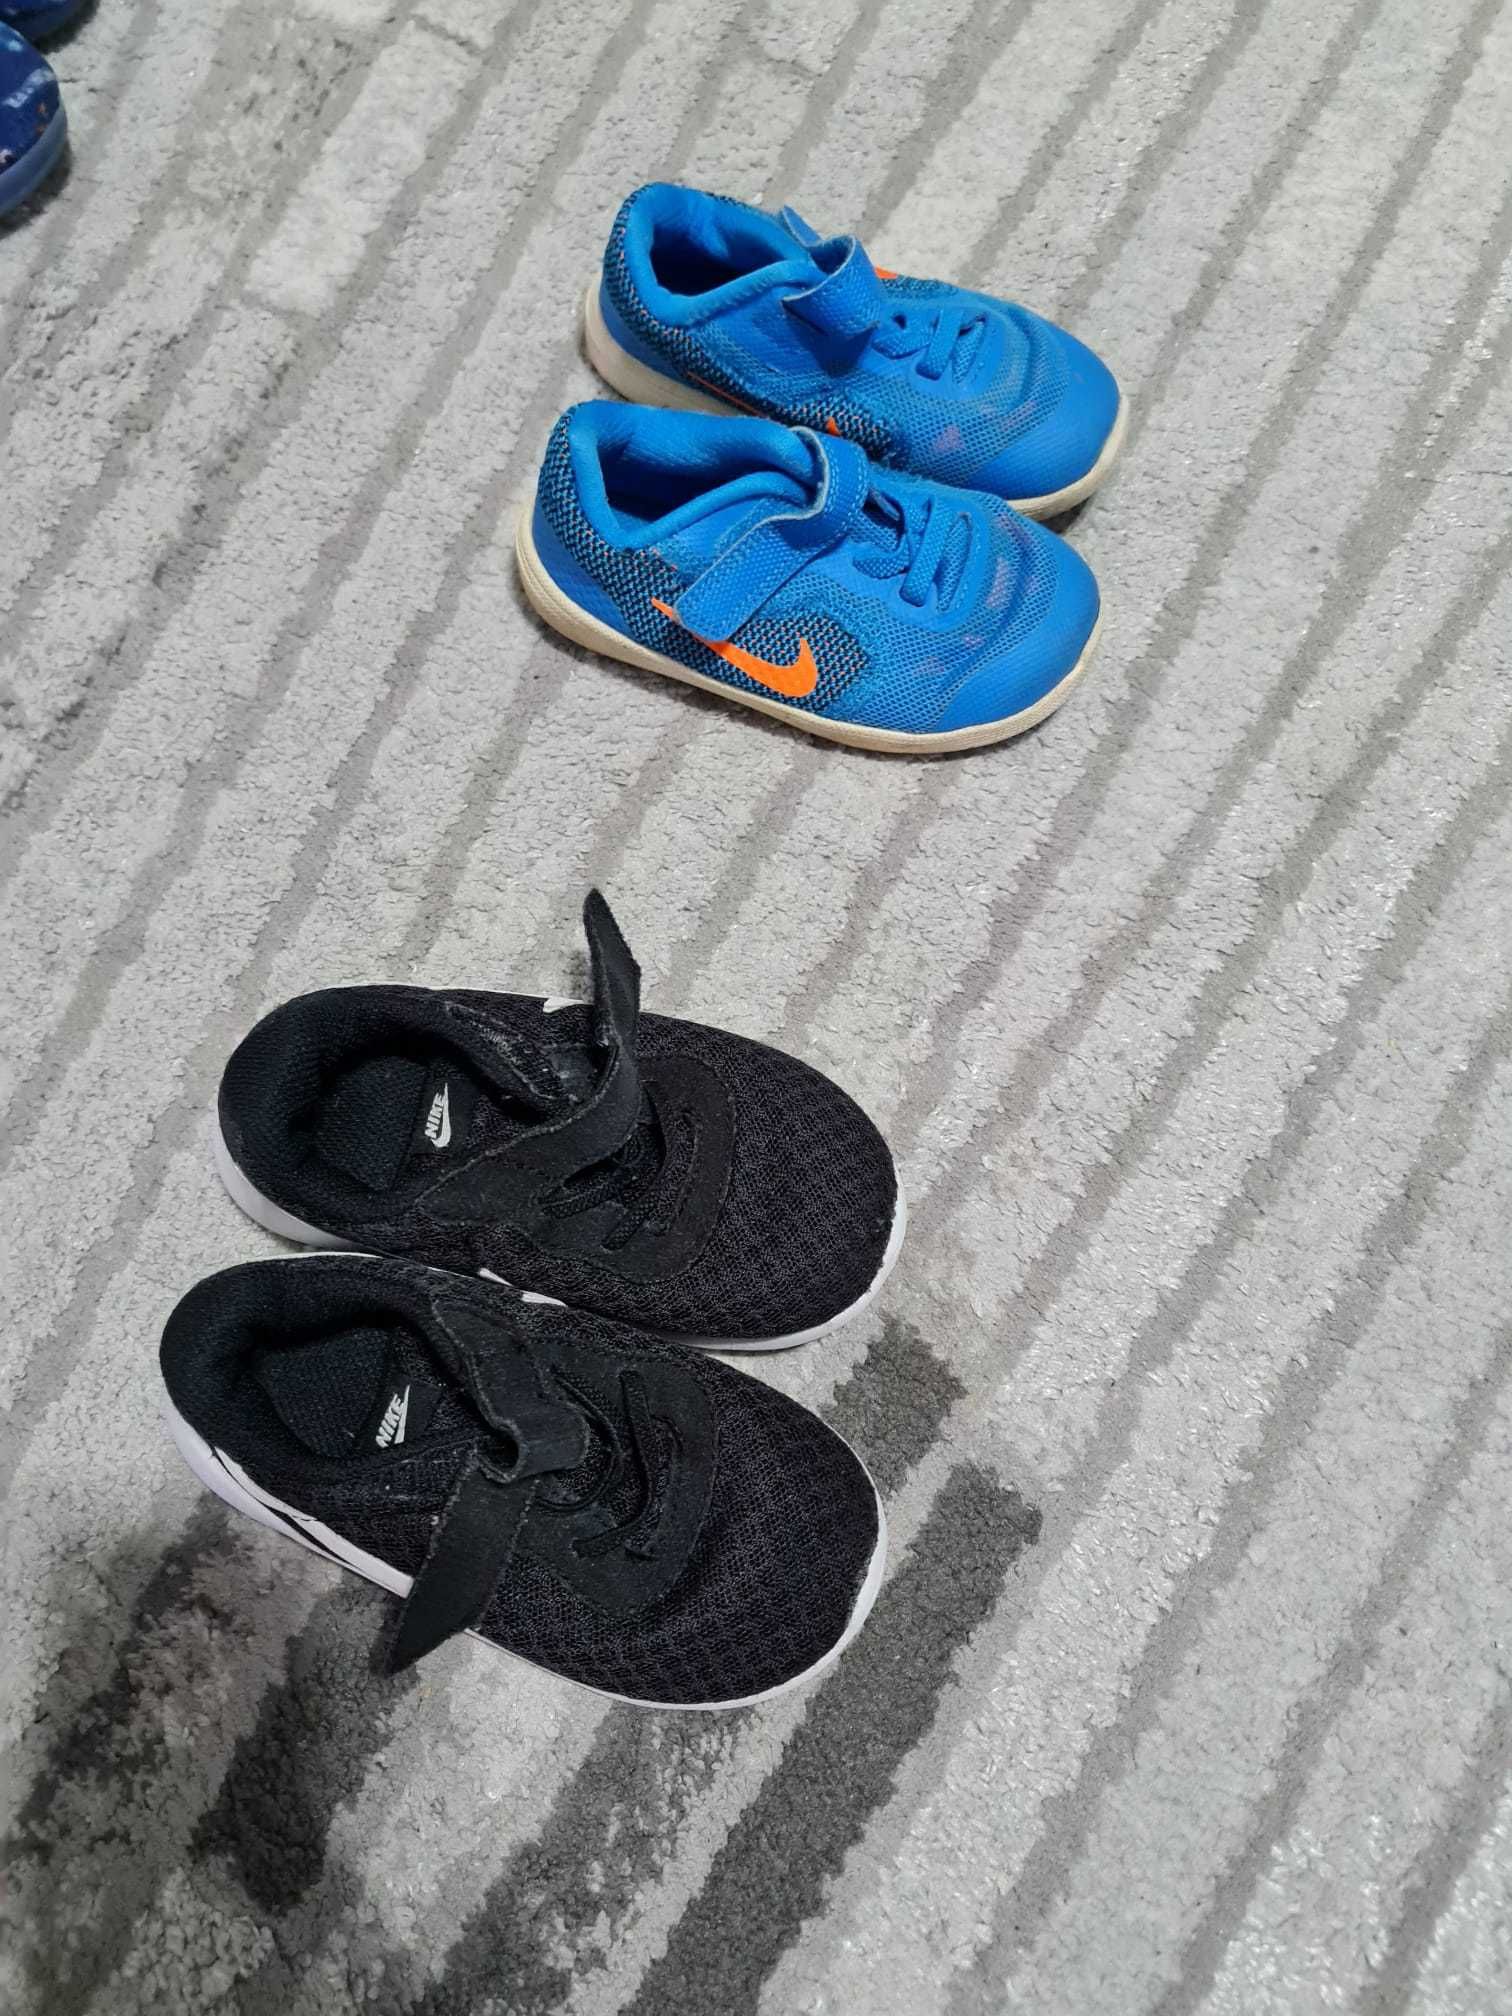 Adidasi ghete cizme copii diverse marimi